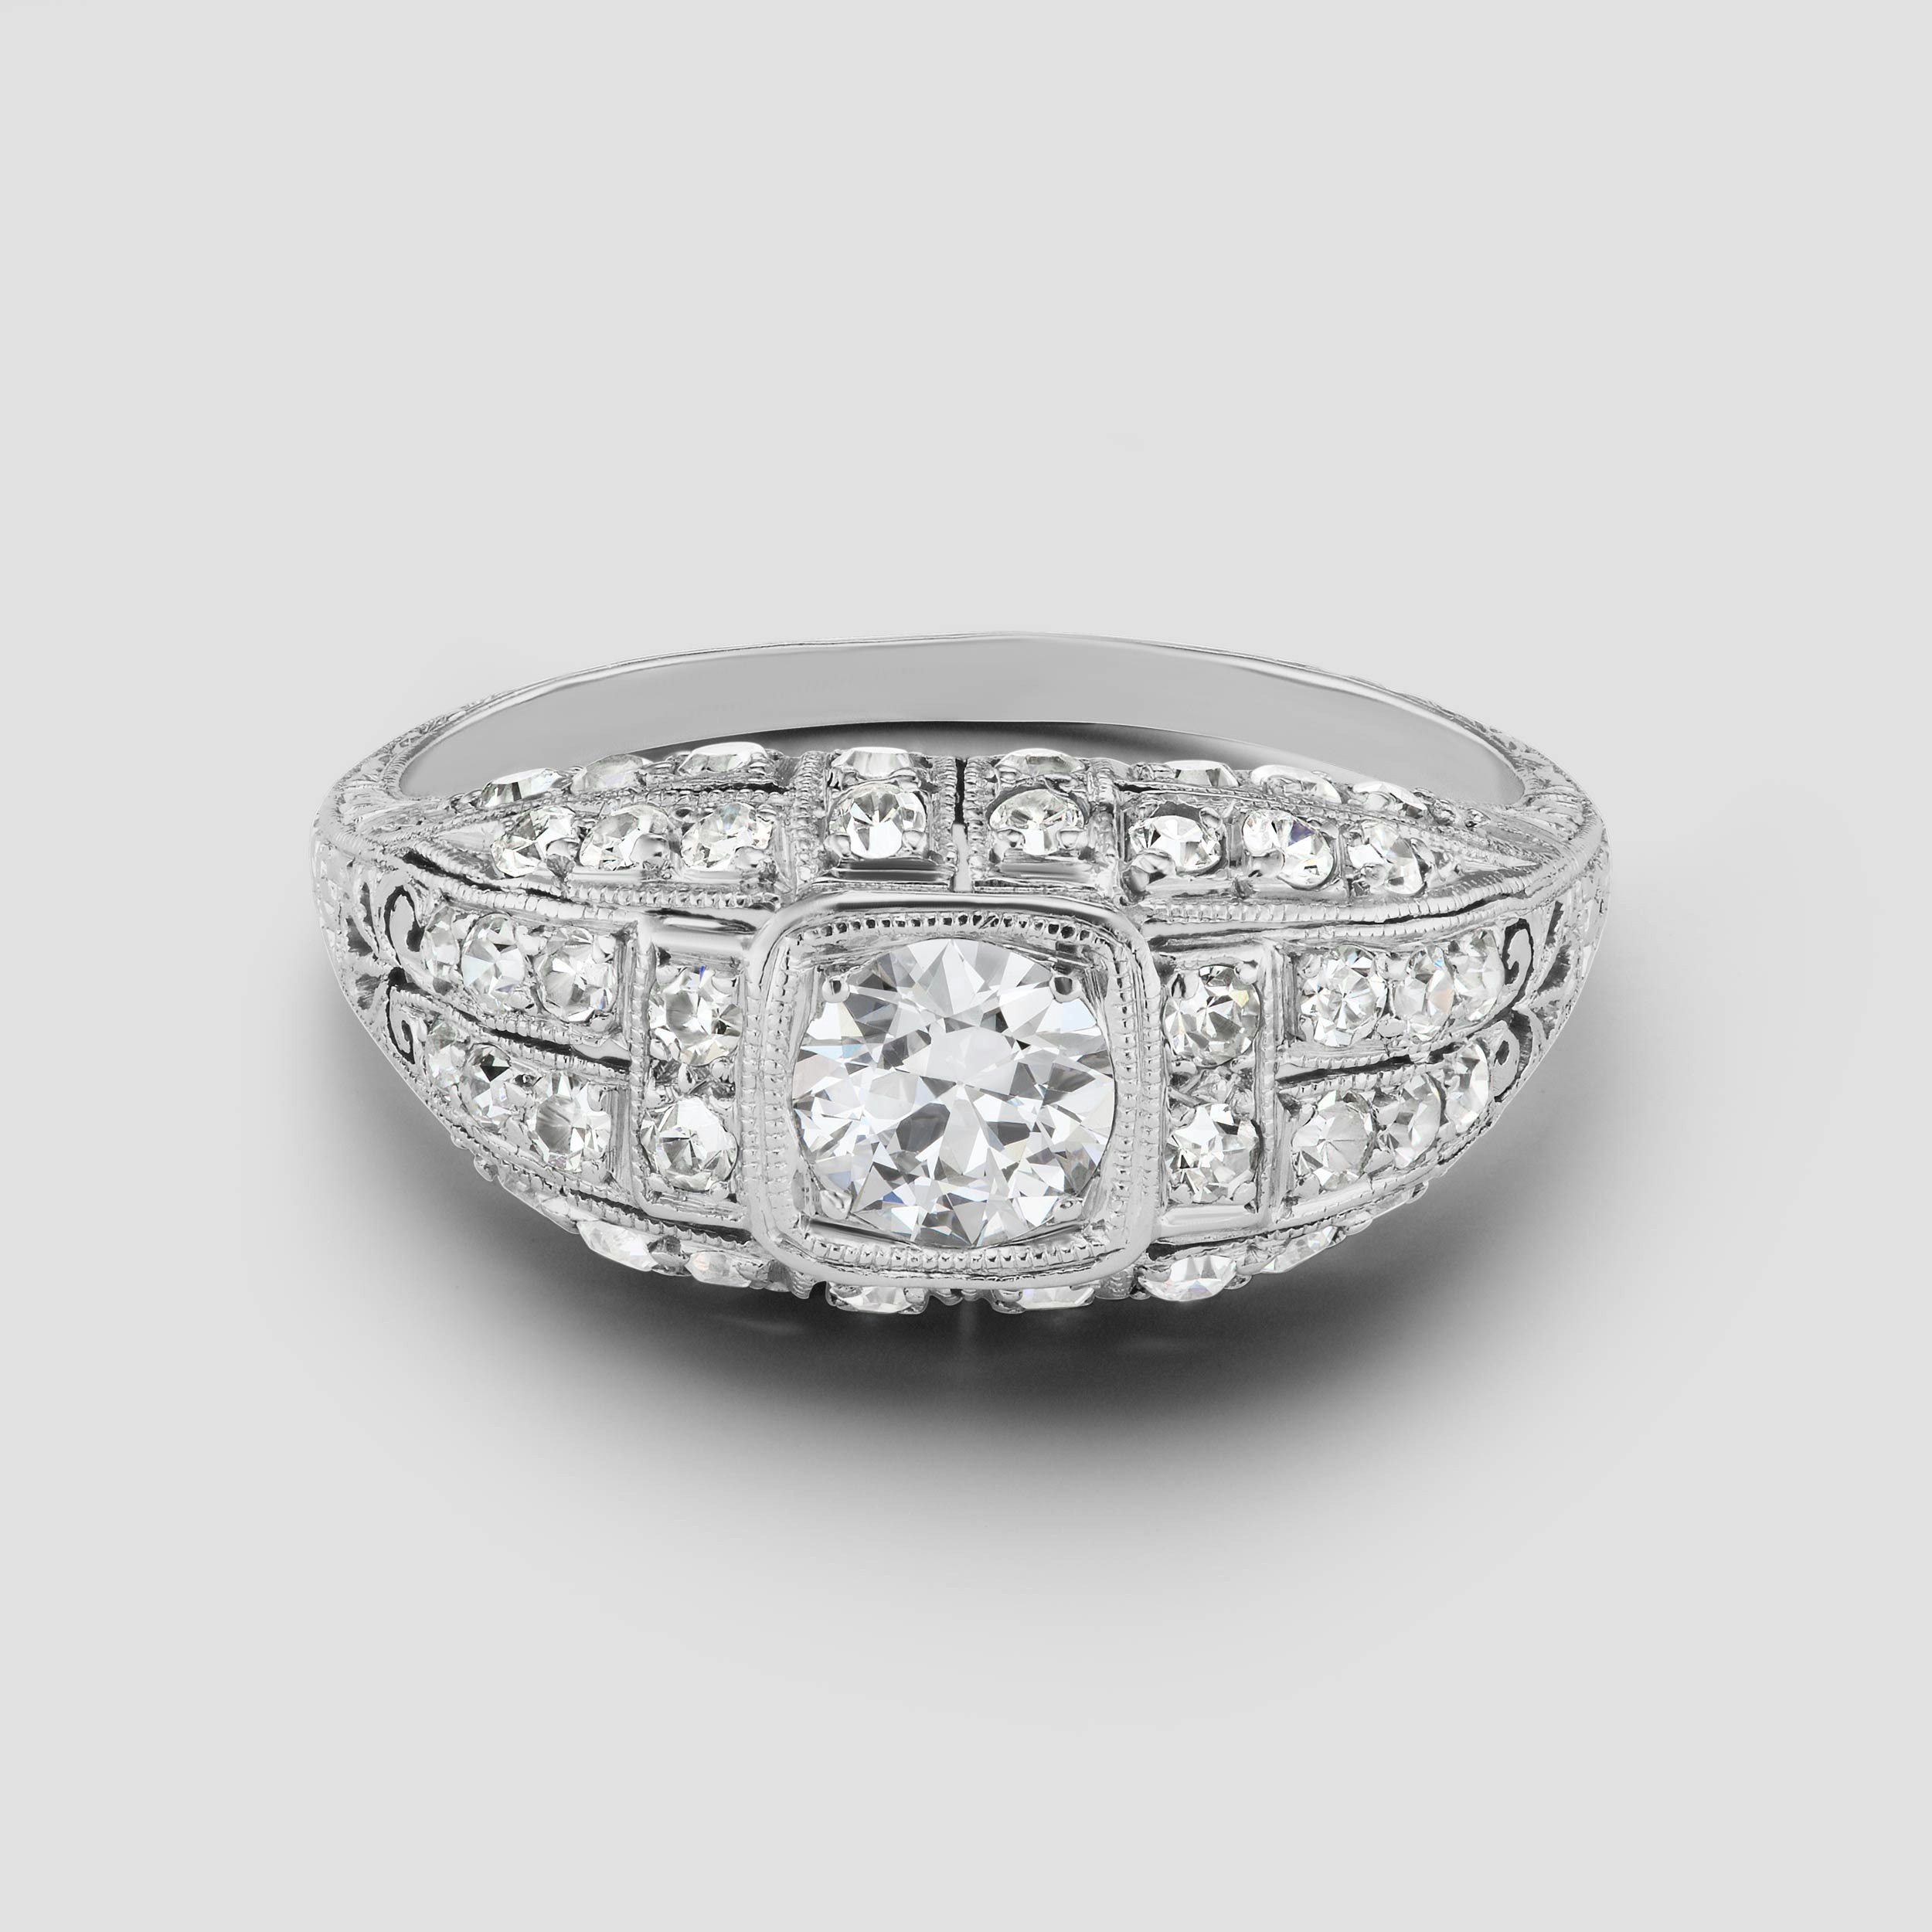 Photo of an original Art Deco Engagement Ring in platinum circa 1940's.